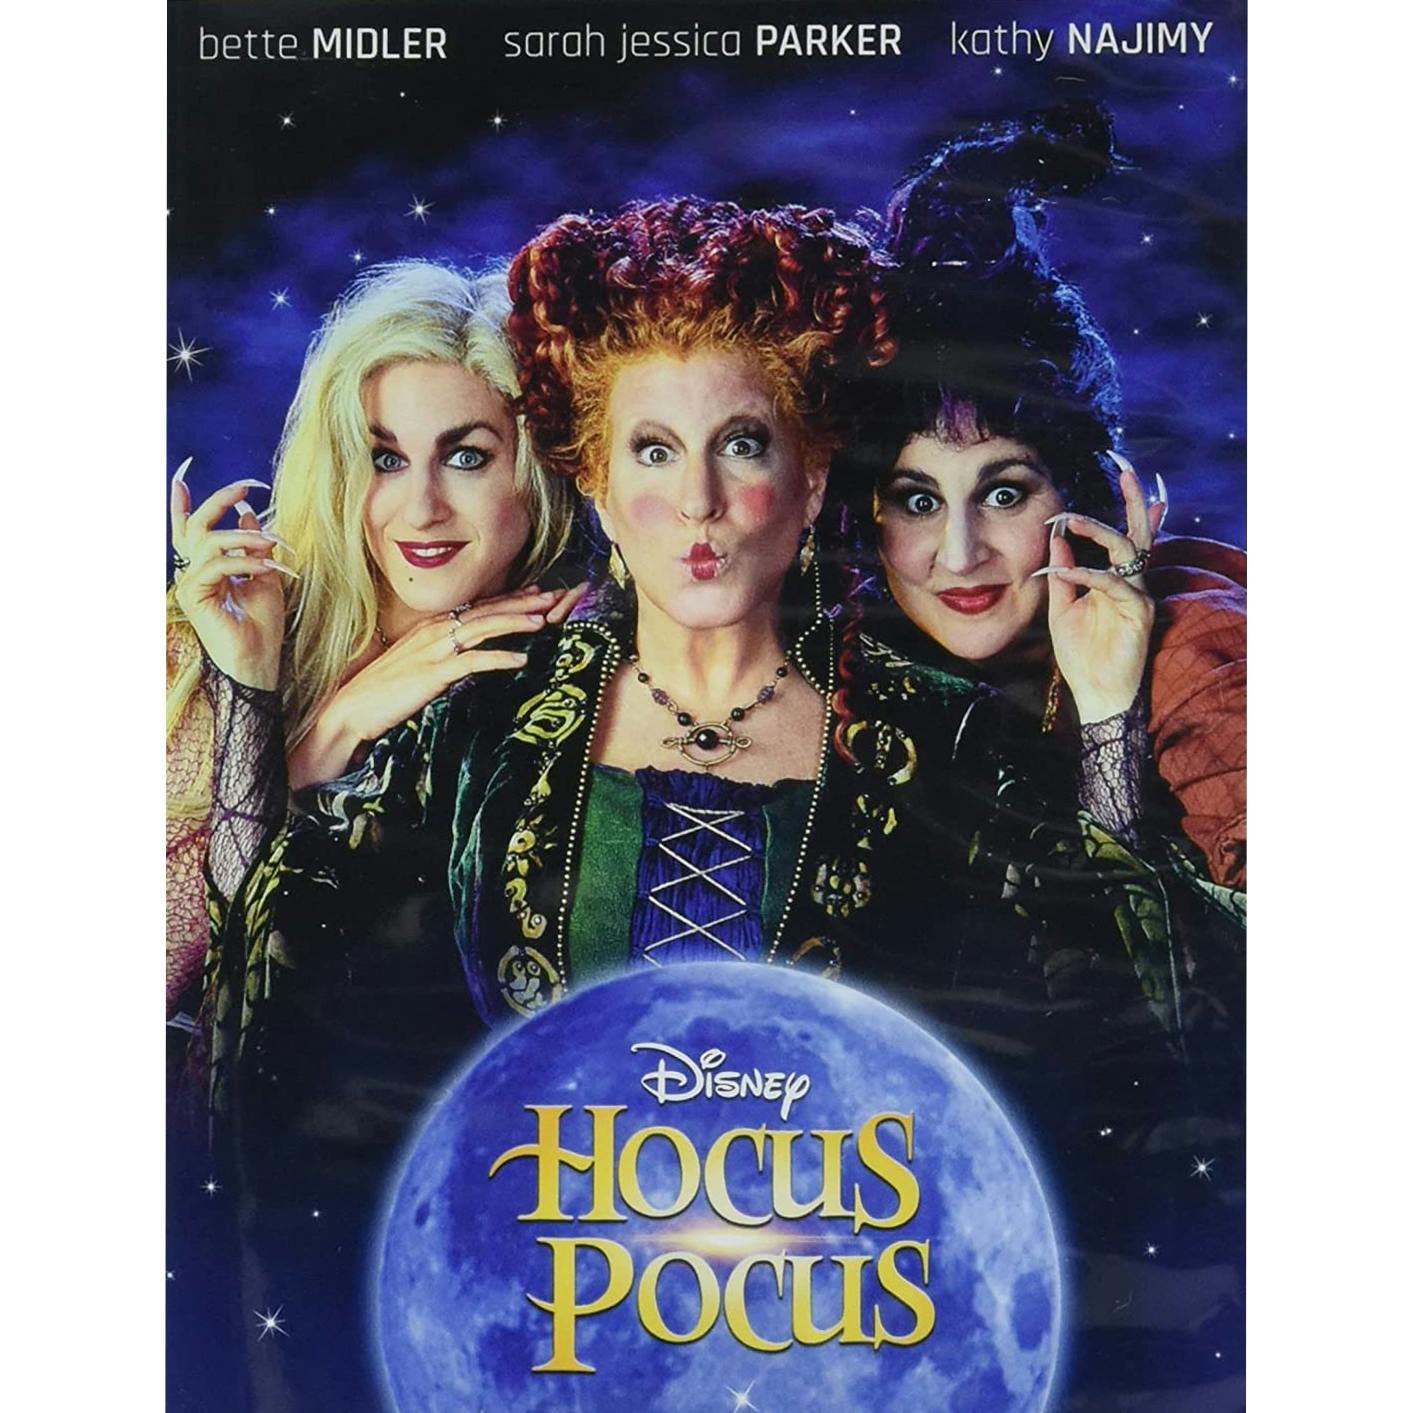 Disney Original Movie Hocus Pocus DVD